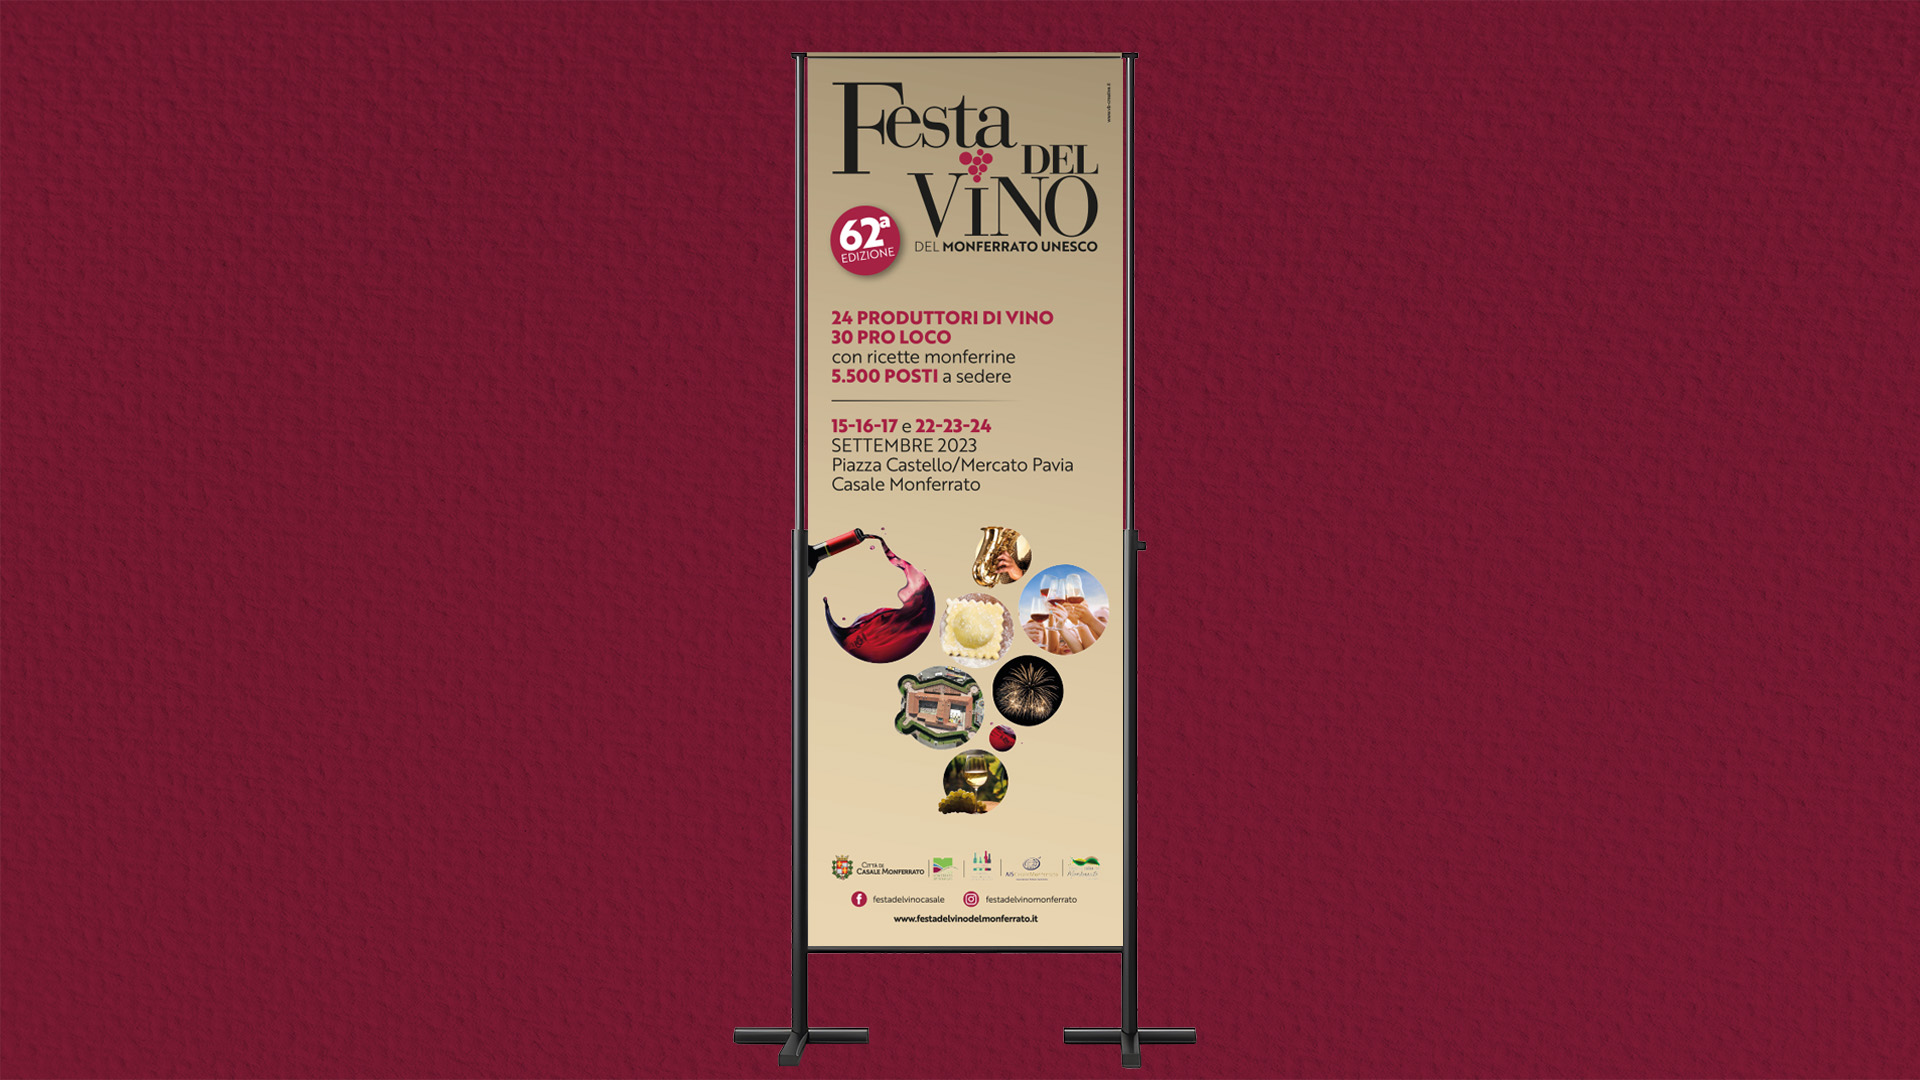 62° Festa del Vino del Monferrato Unesco Kouros